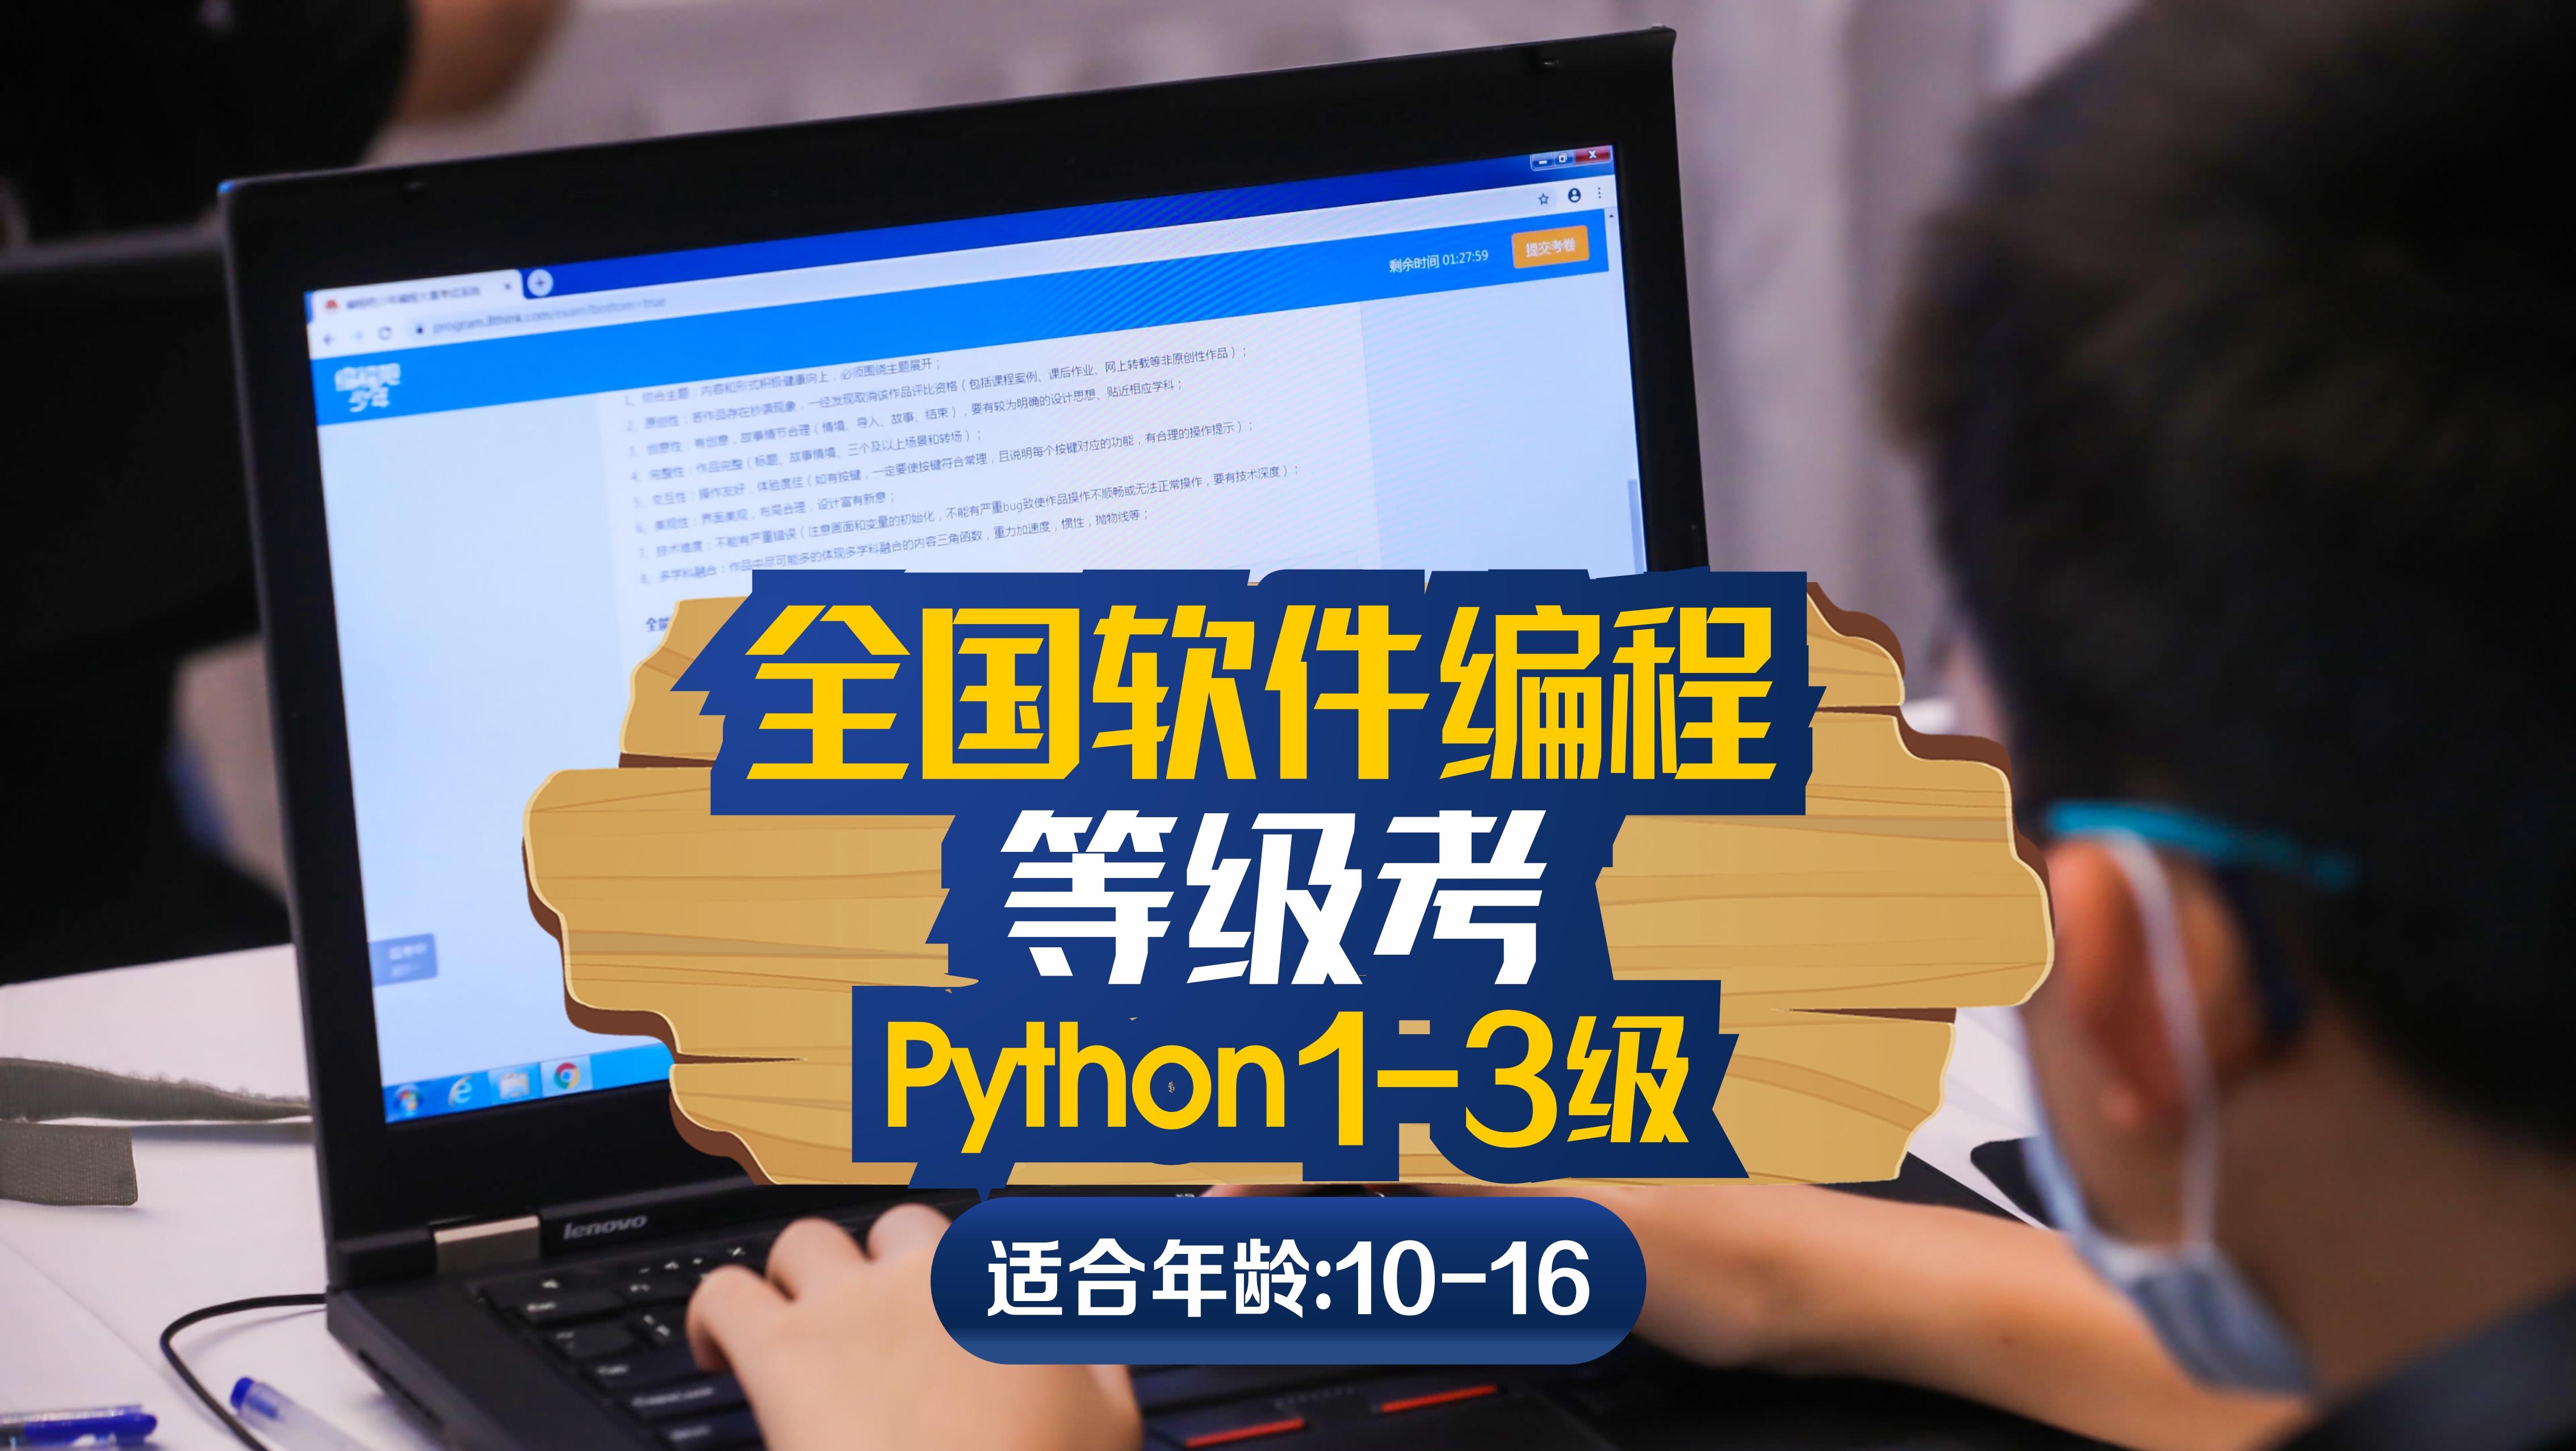 斯坦星球科创编程[10-16岁]全国软件编程等级考Python1-3级图片